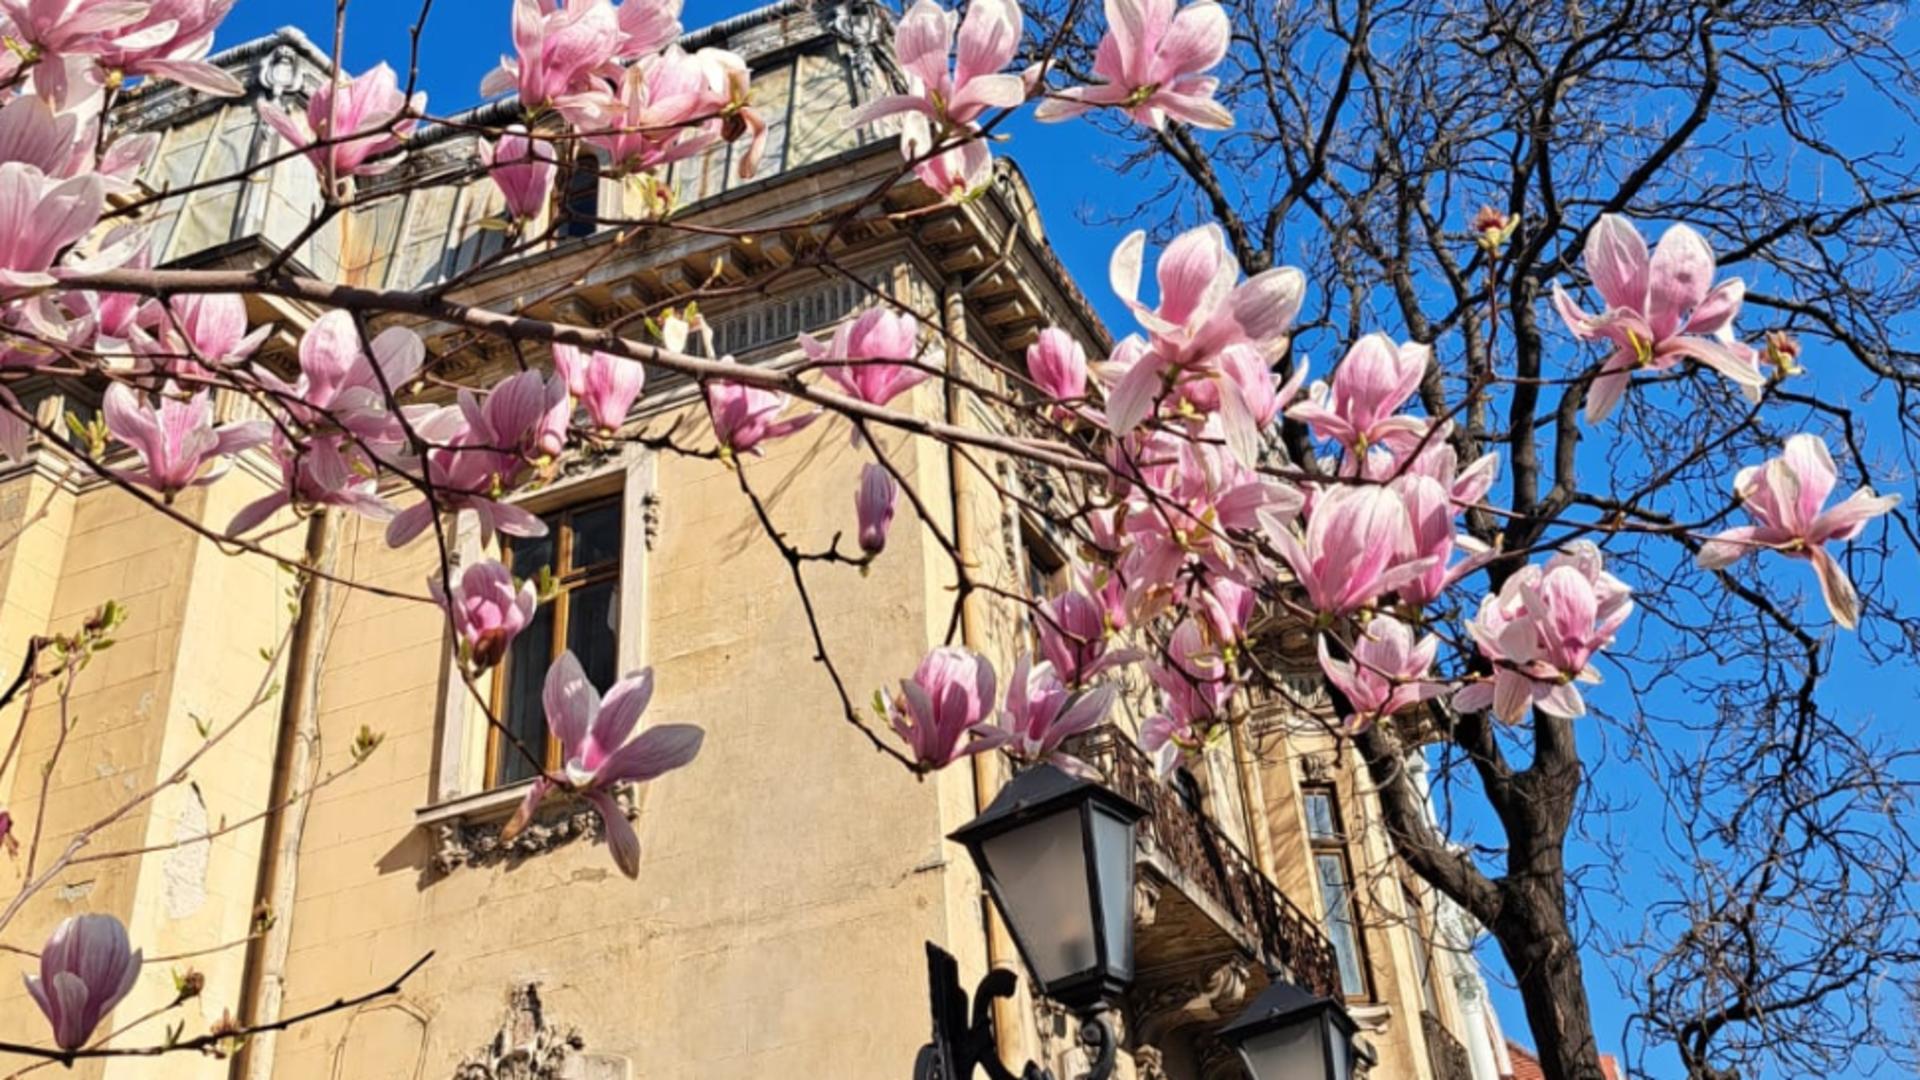 Rețelele sociale, invadate de fotografii cu magnolii. Legendelei si simbolurile acestei flori spectaculoase/ FOTO/ Realitatea.Net